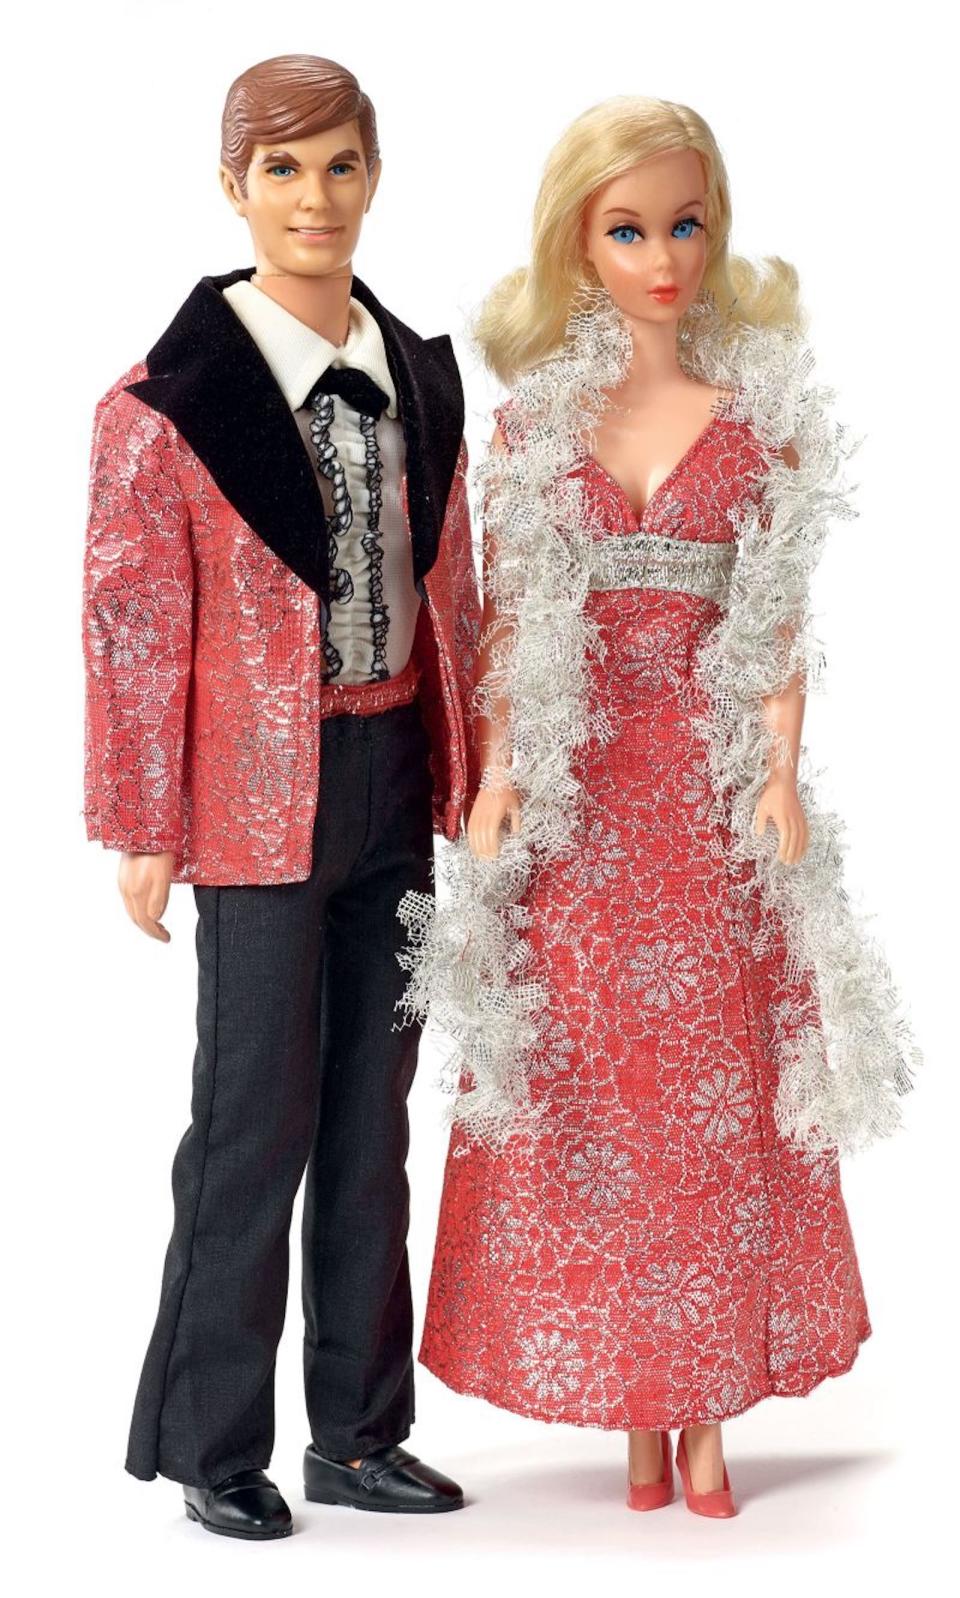 Carol Spencer diseñó ropa para Barbie desde 1963 hasta 1999. (Crédito: Cortesía de Carol Spencer)